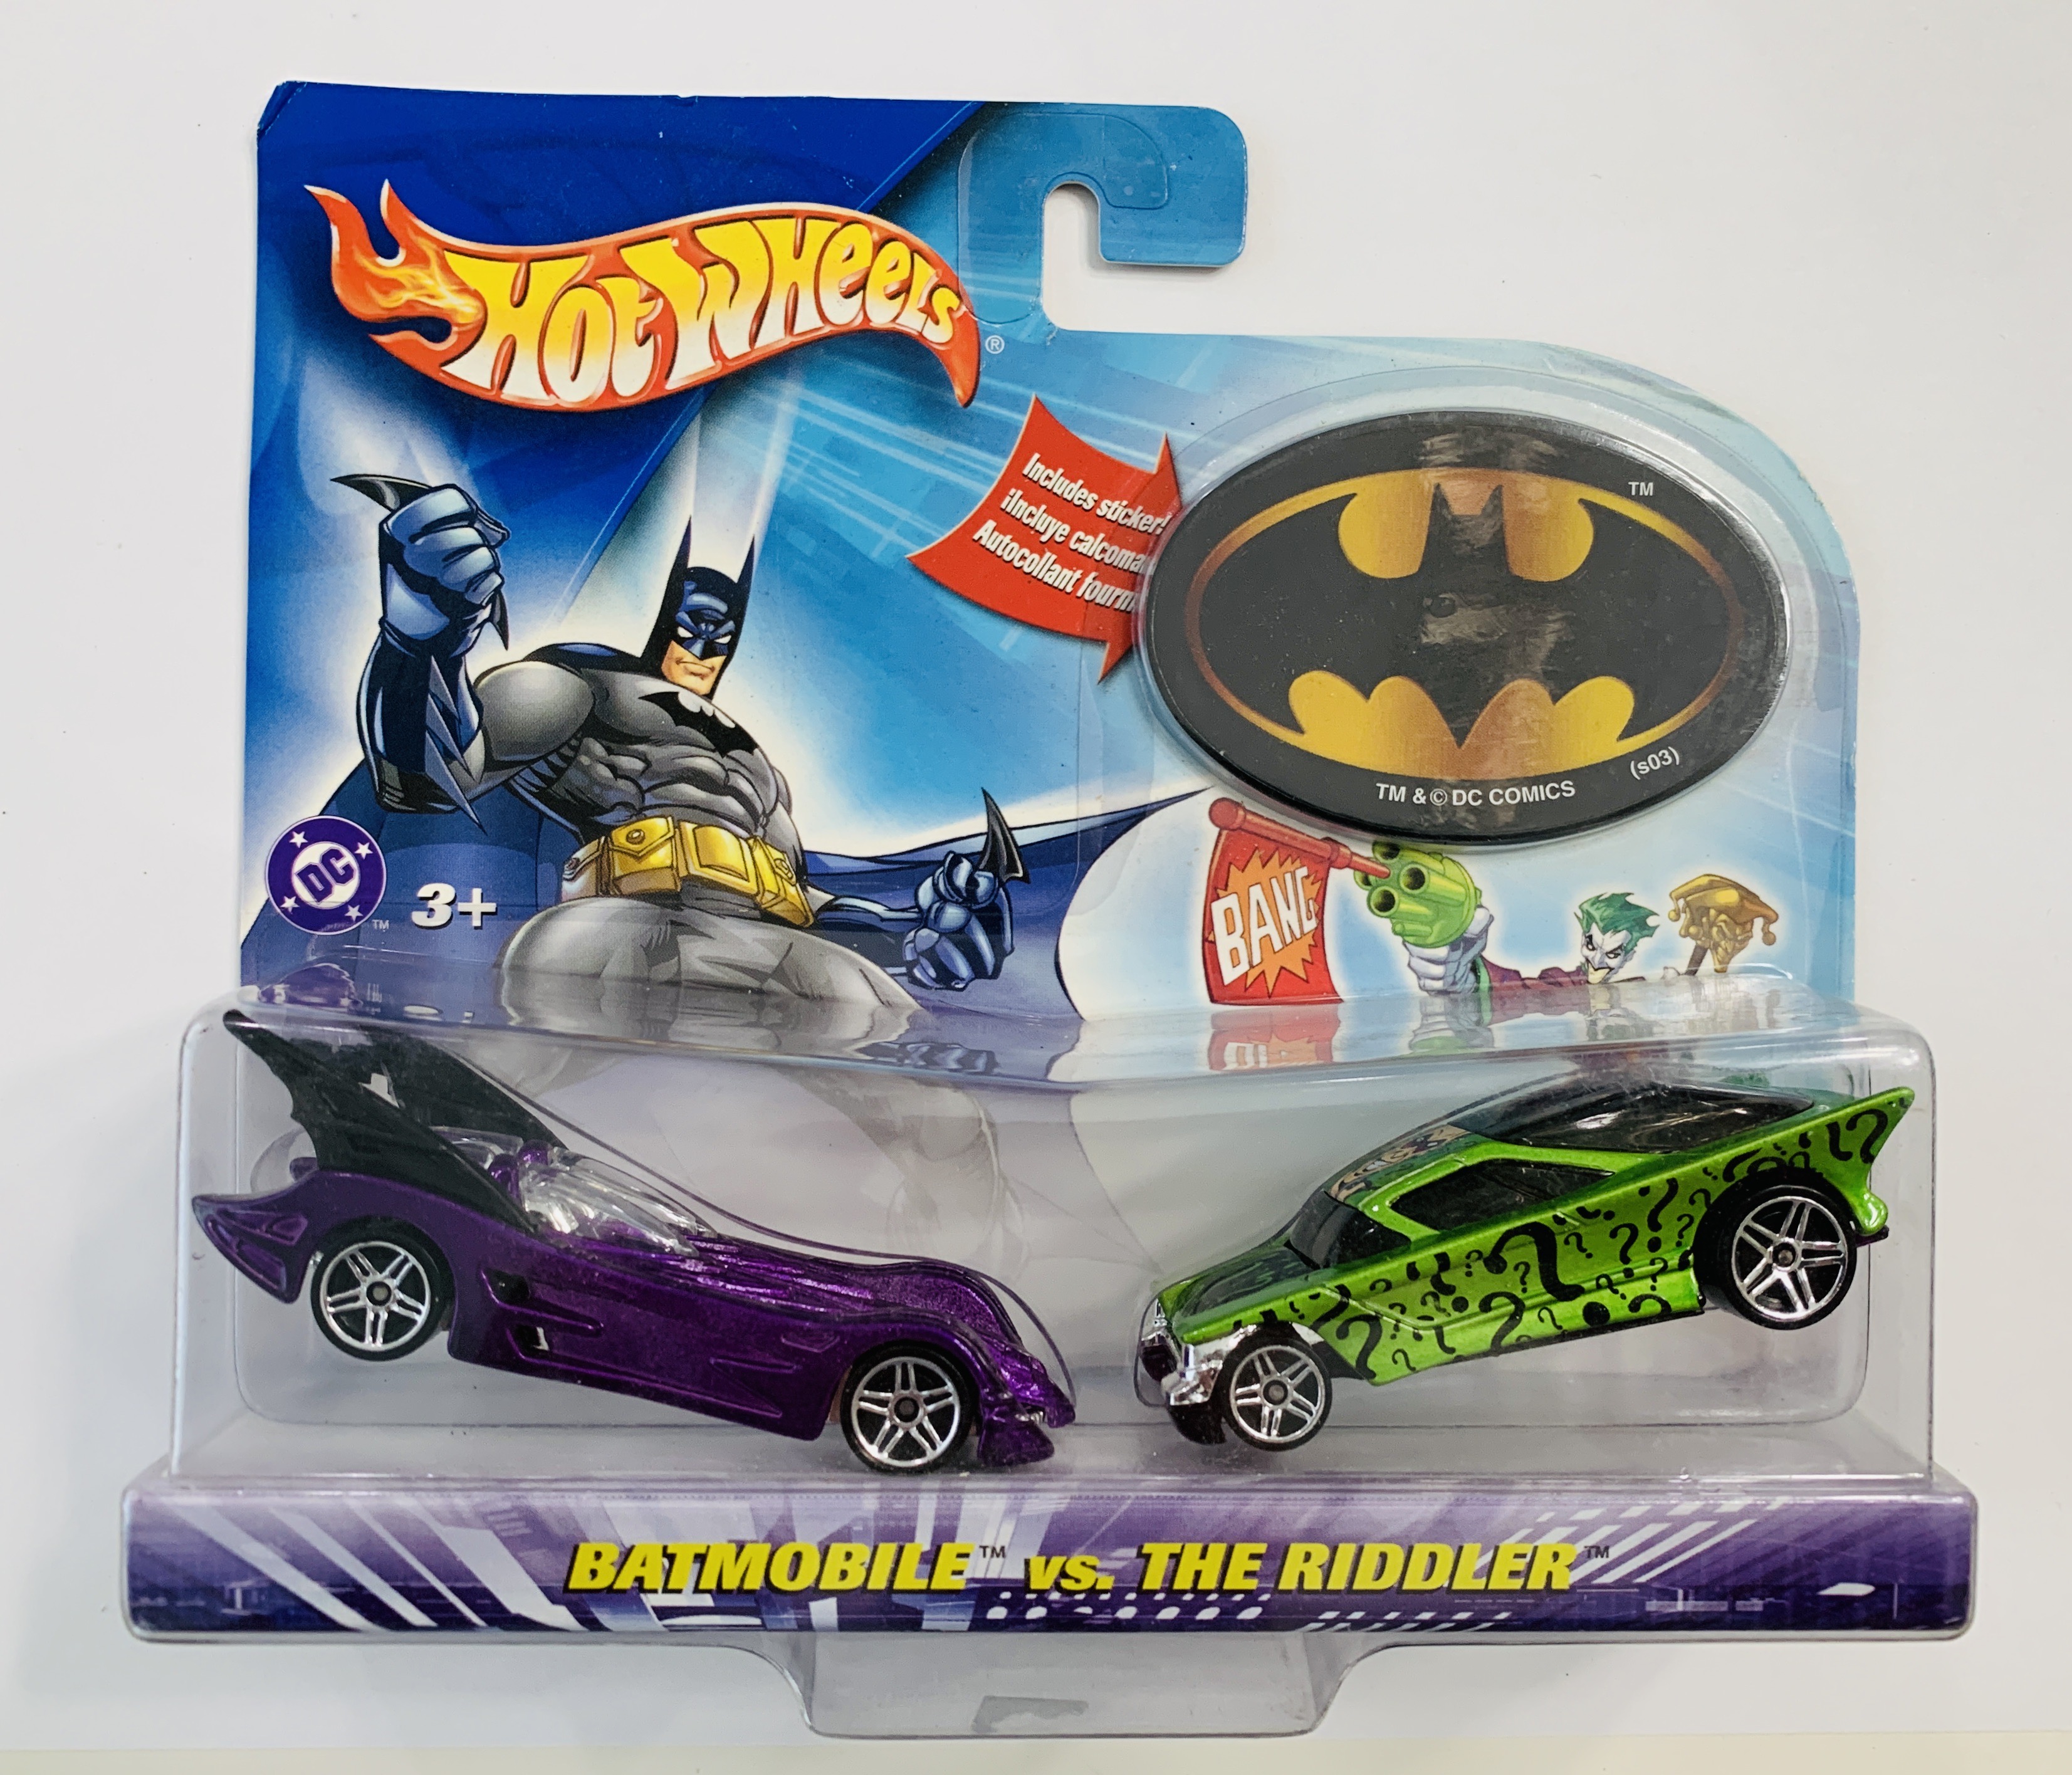  Hot Wheels Batman vs The Riddler Two Pack